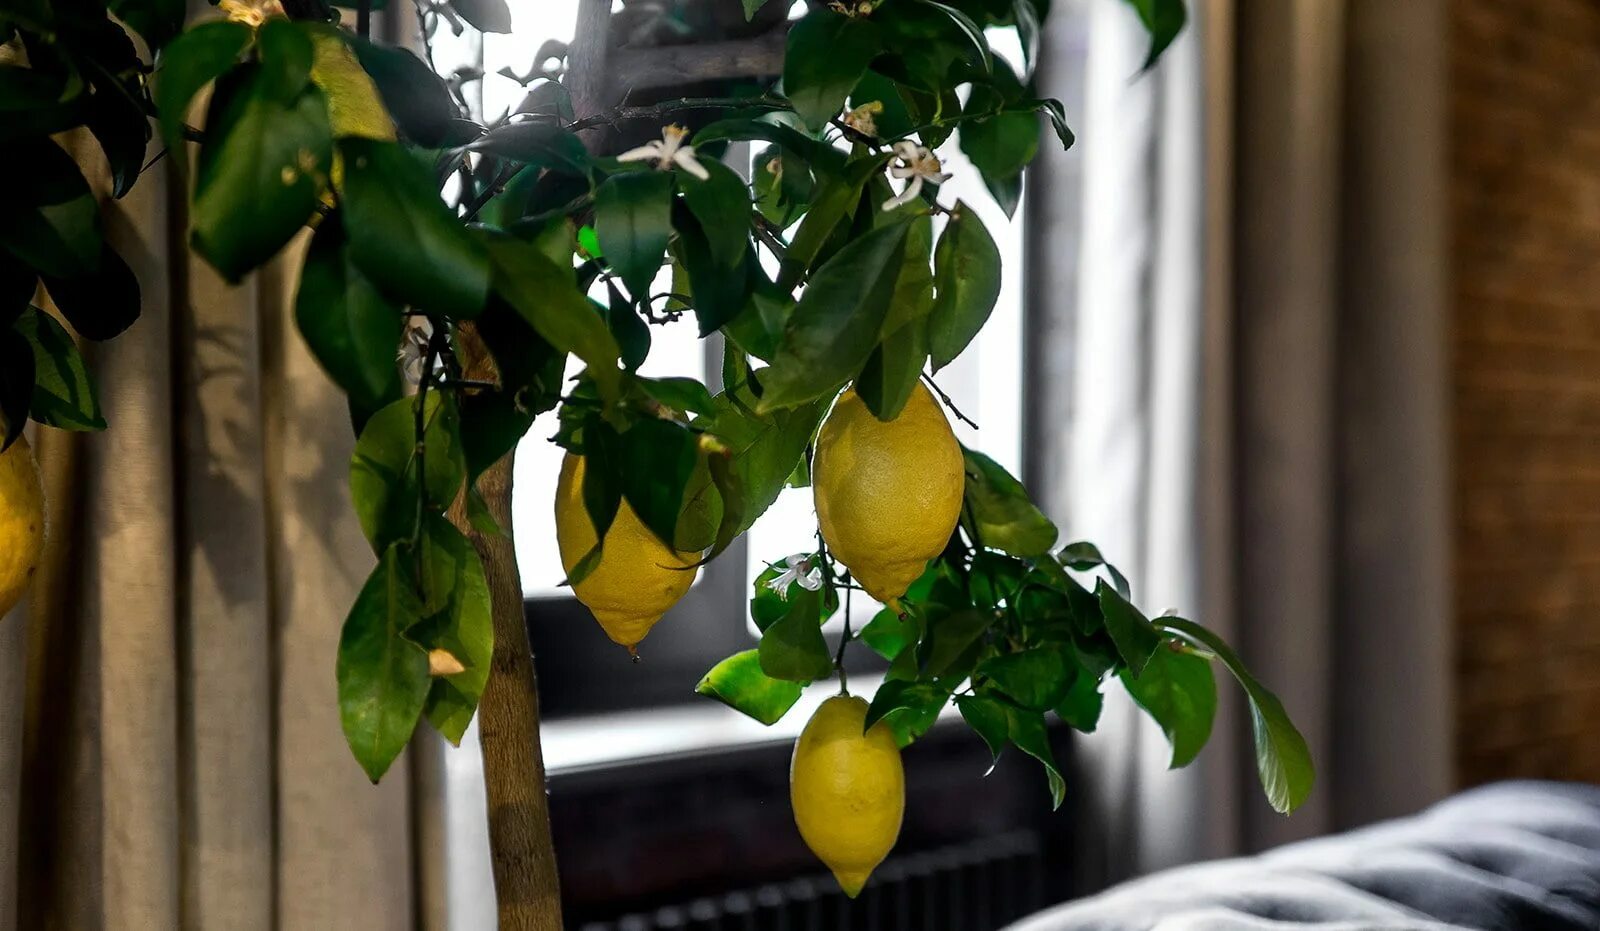 Цитрус (комнатное растение) лимон Мейера. Лимон дерево. Цитрус (комнатное растение) лимон Лунарио. Лимон Мейера листья. Как ухаживать за лимонами за начинающими